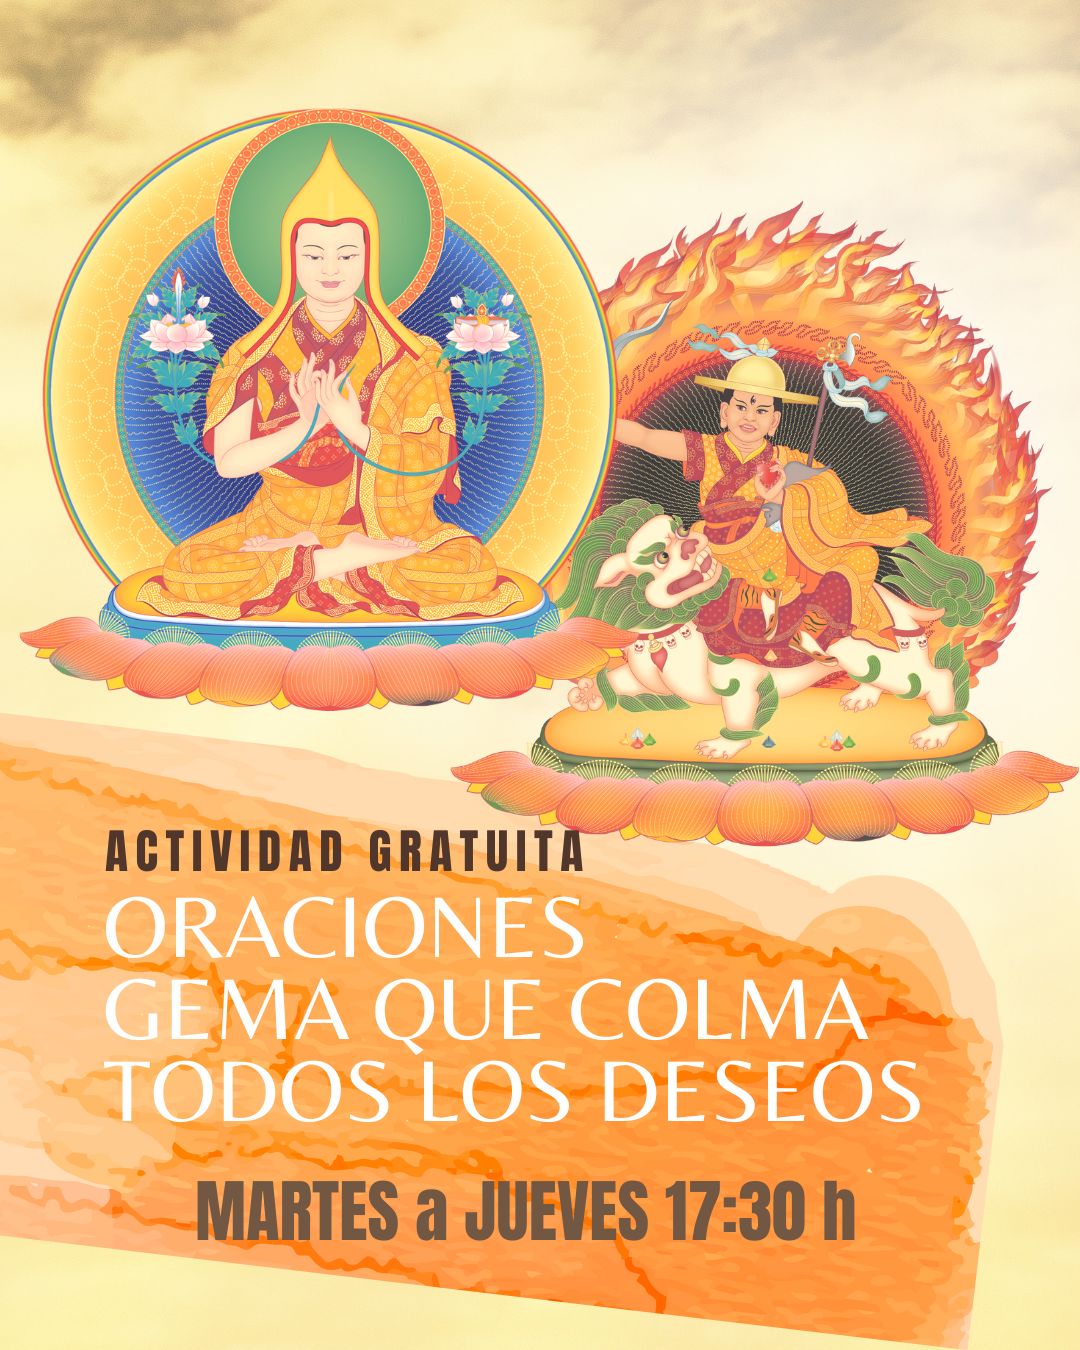 oraciones con meditaciones guiadas gratuitas del budismo kadampa.